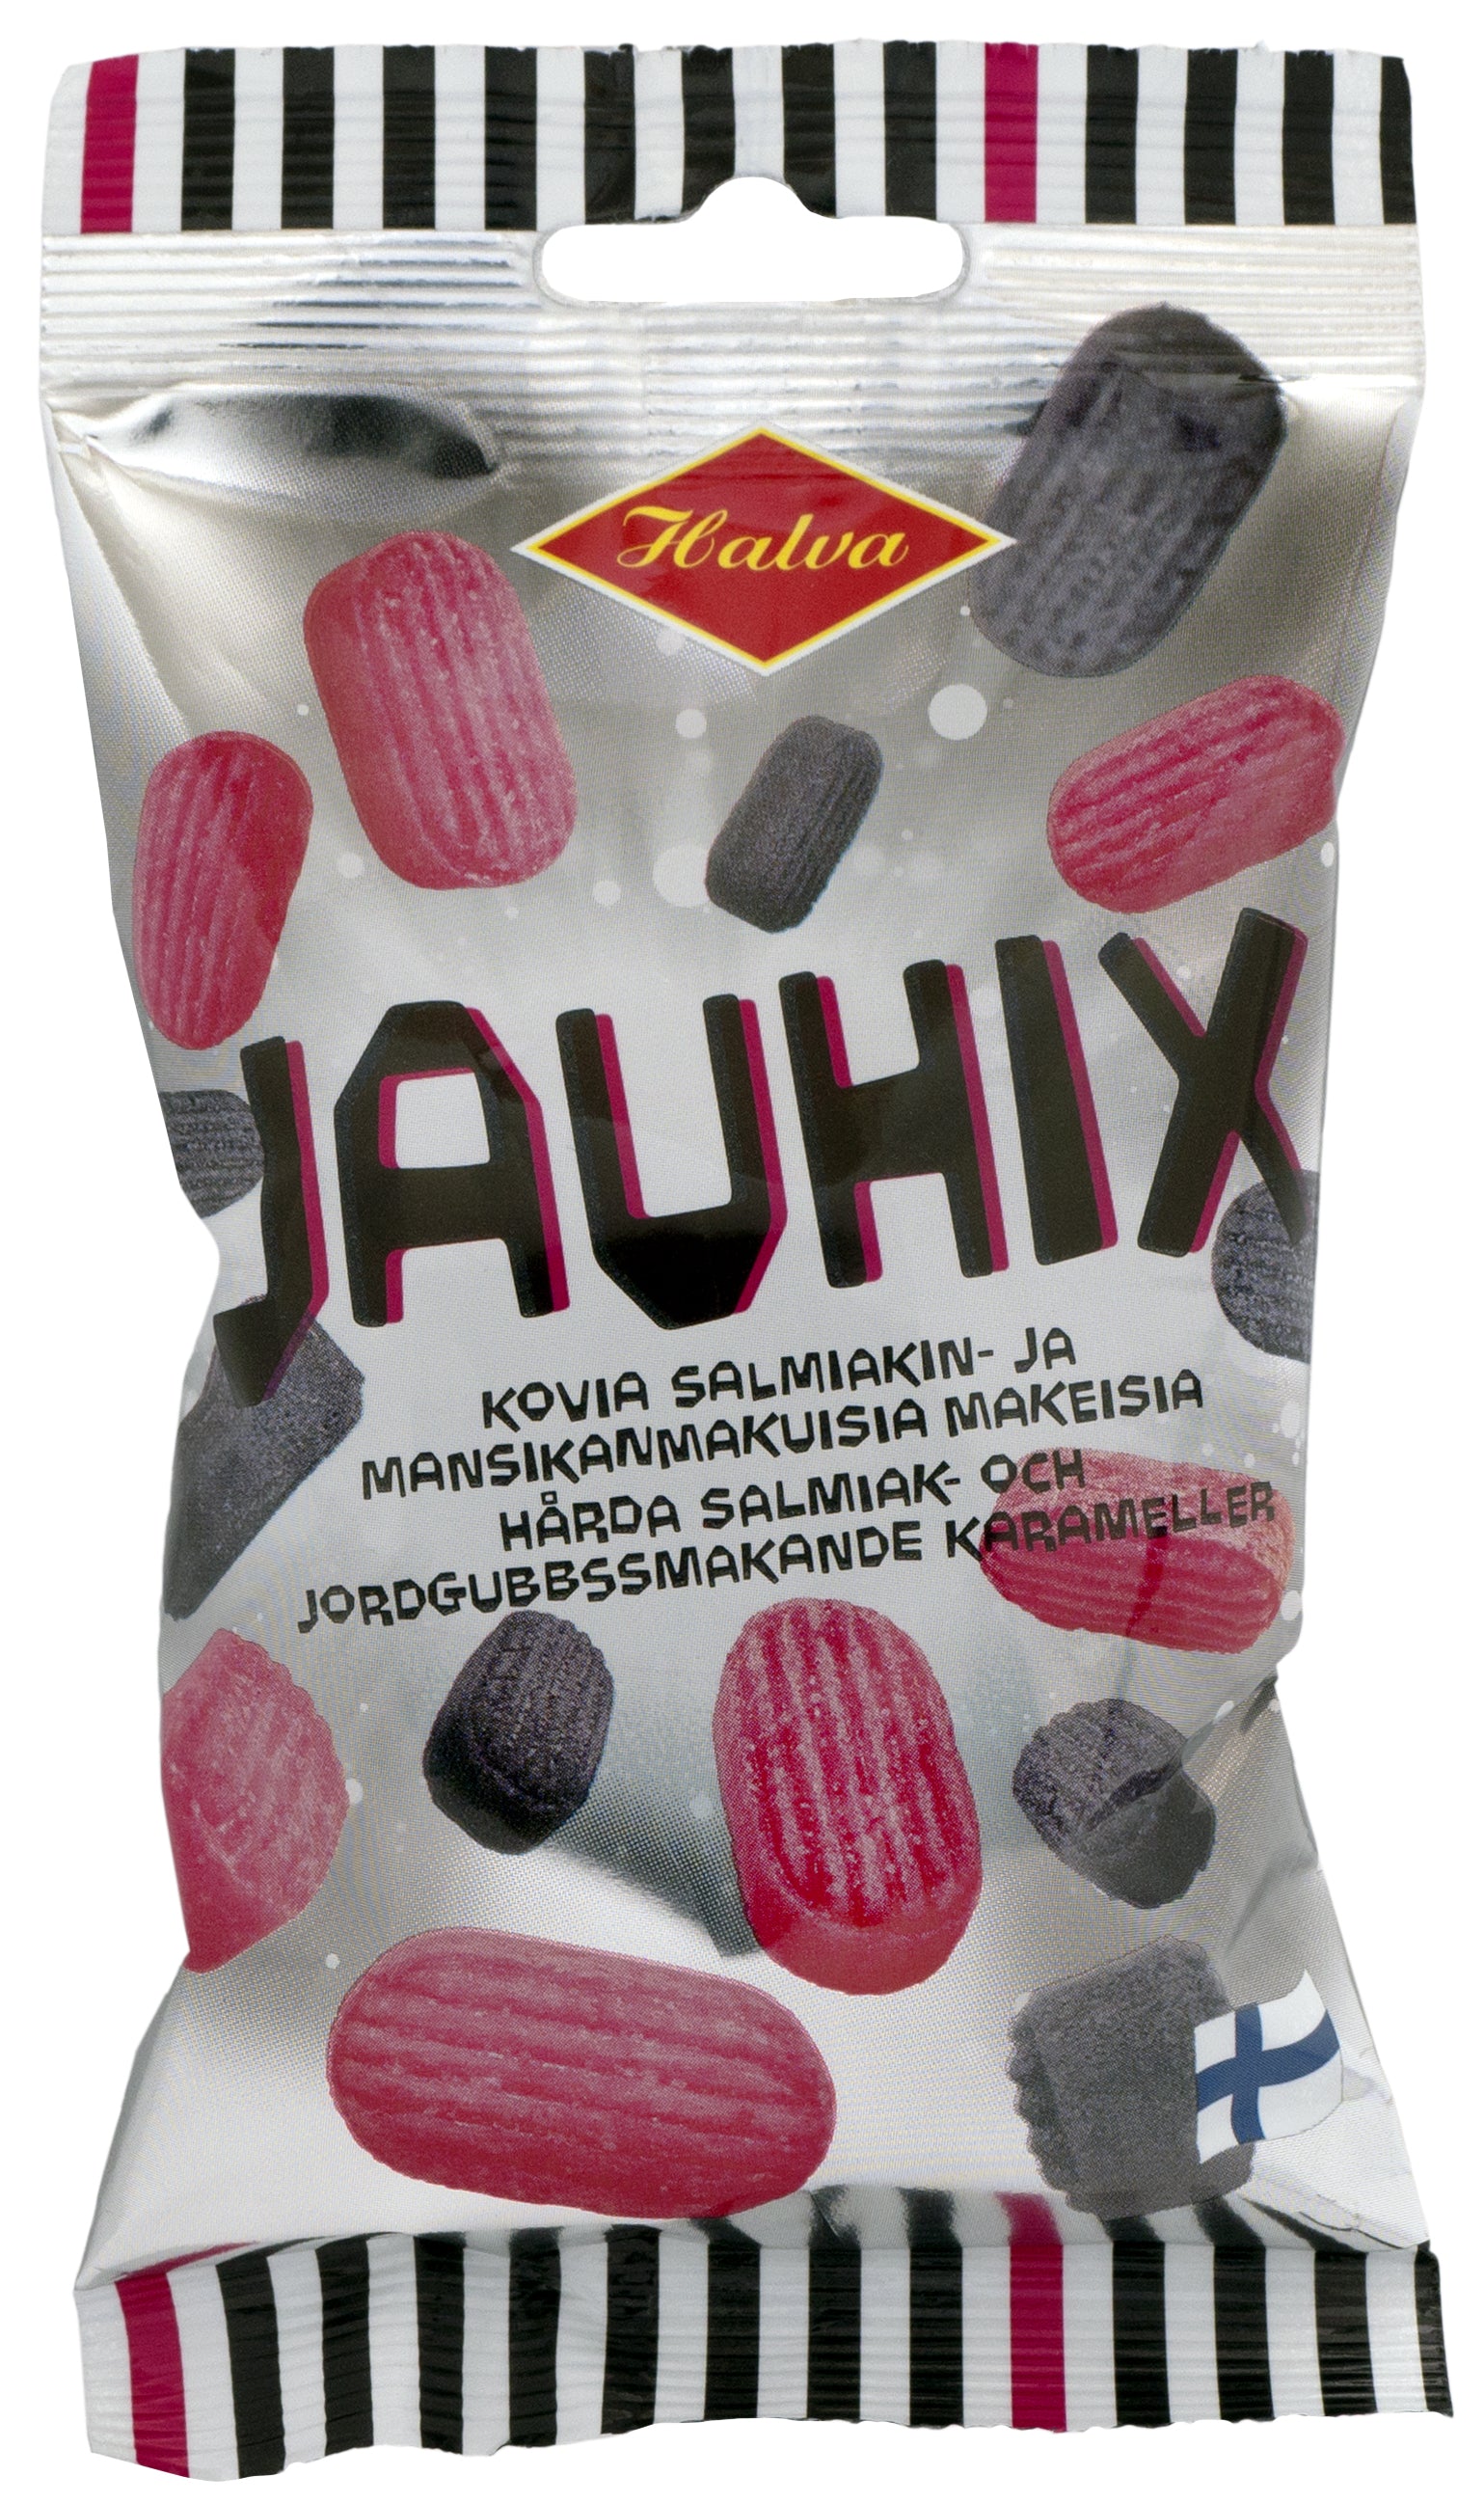 Halva Jauhix 100 g kovia salmiakin- ja mansikanmakuisia makeisia